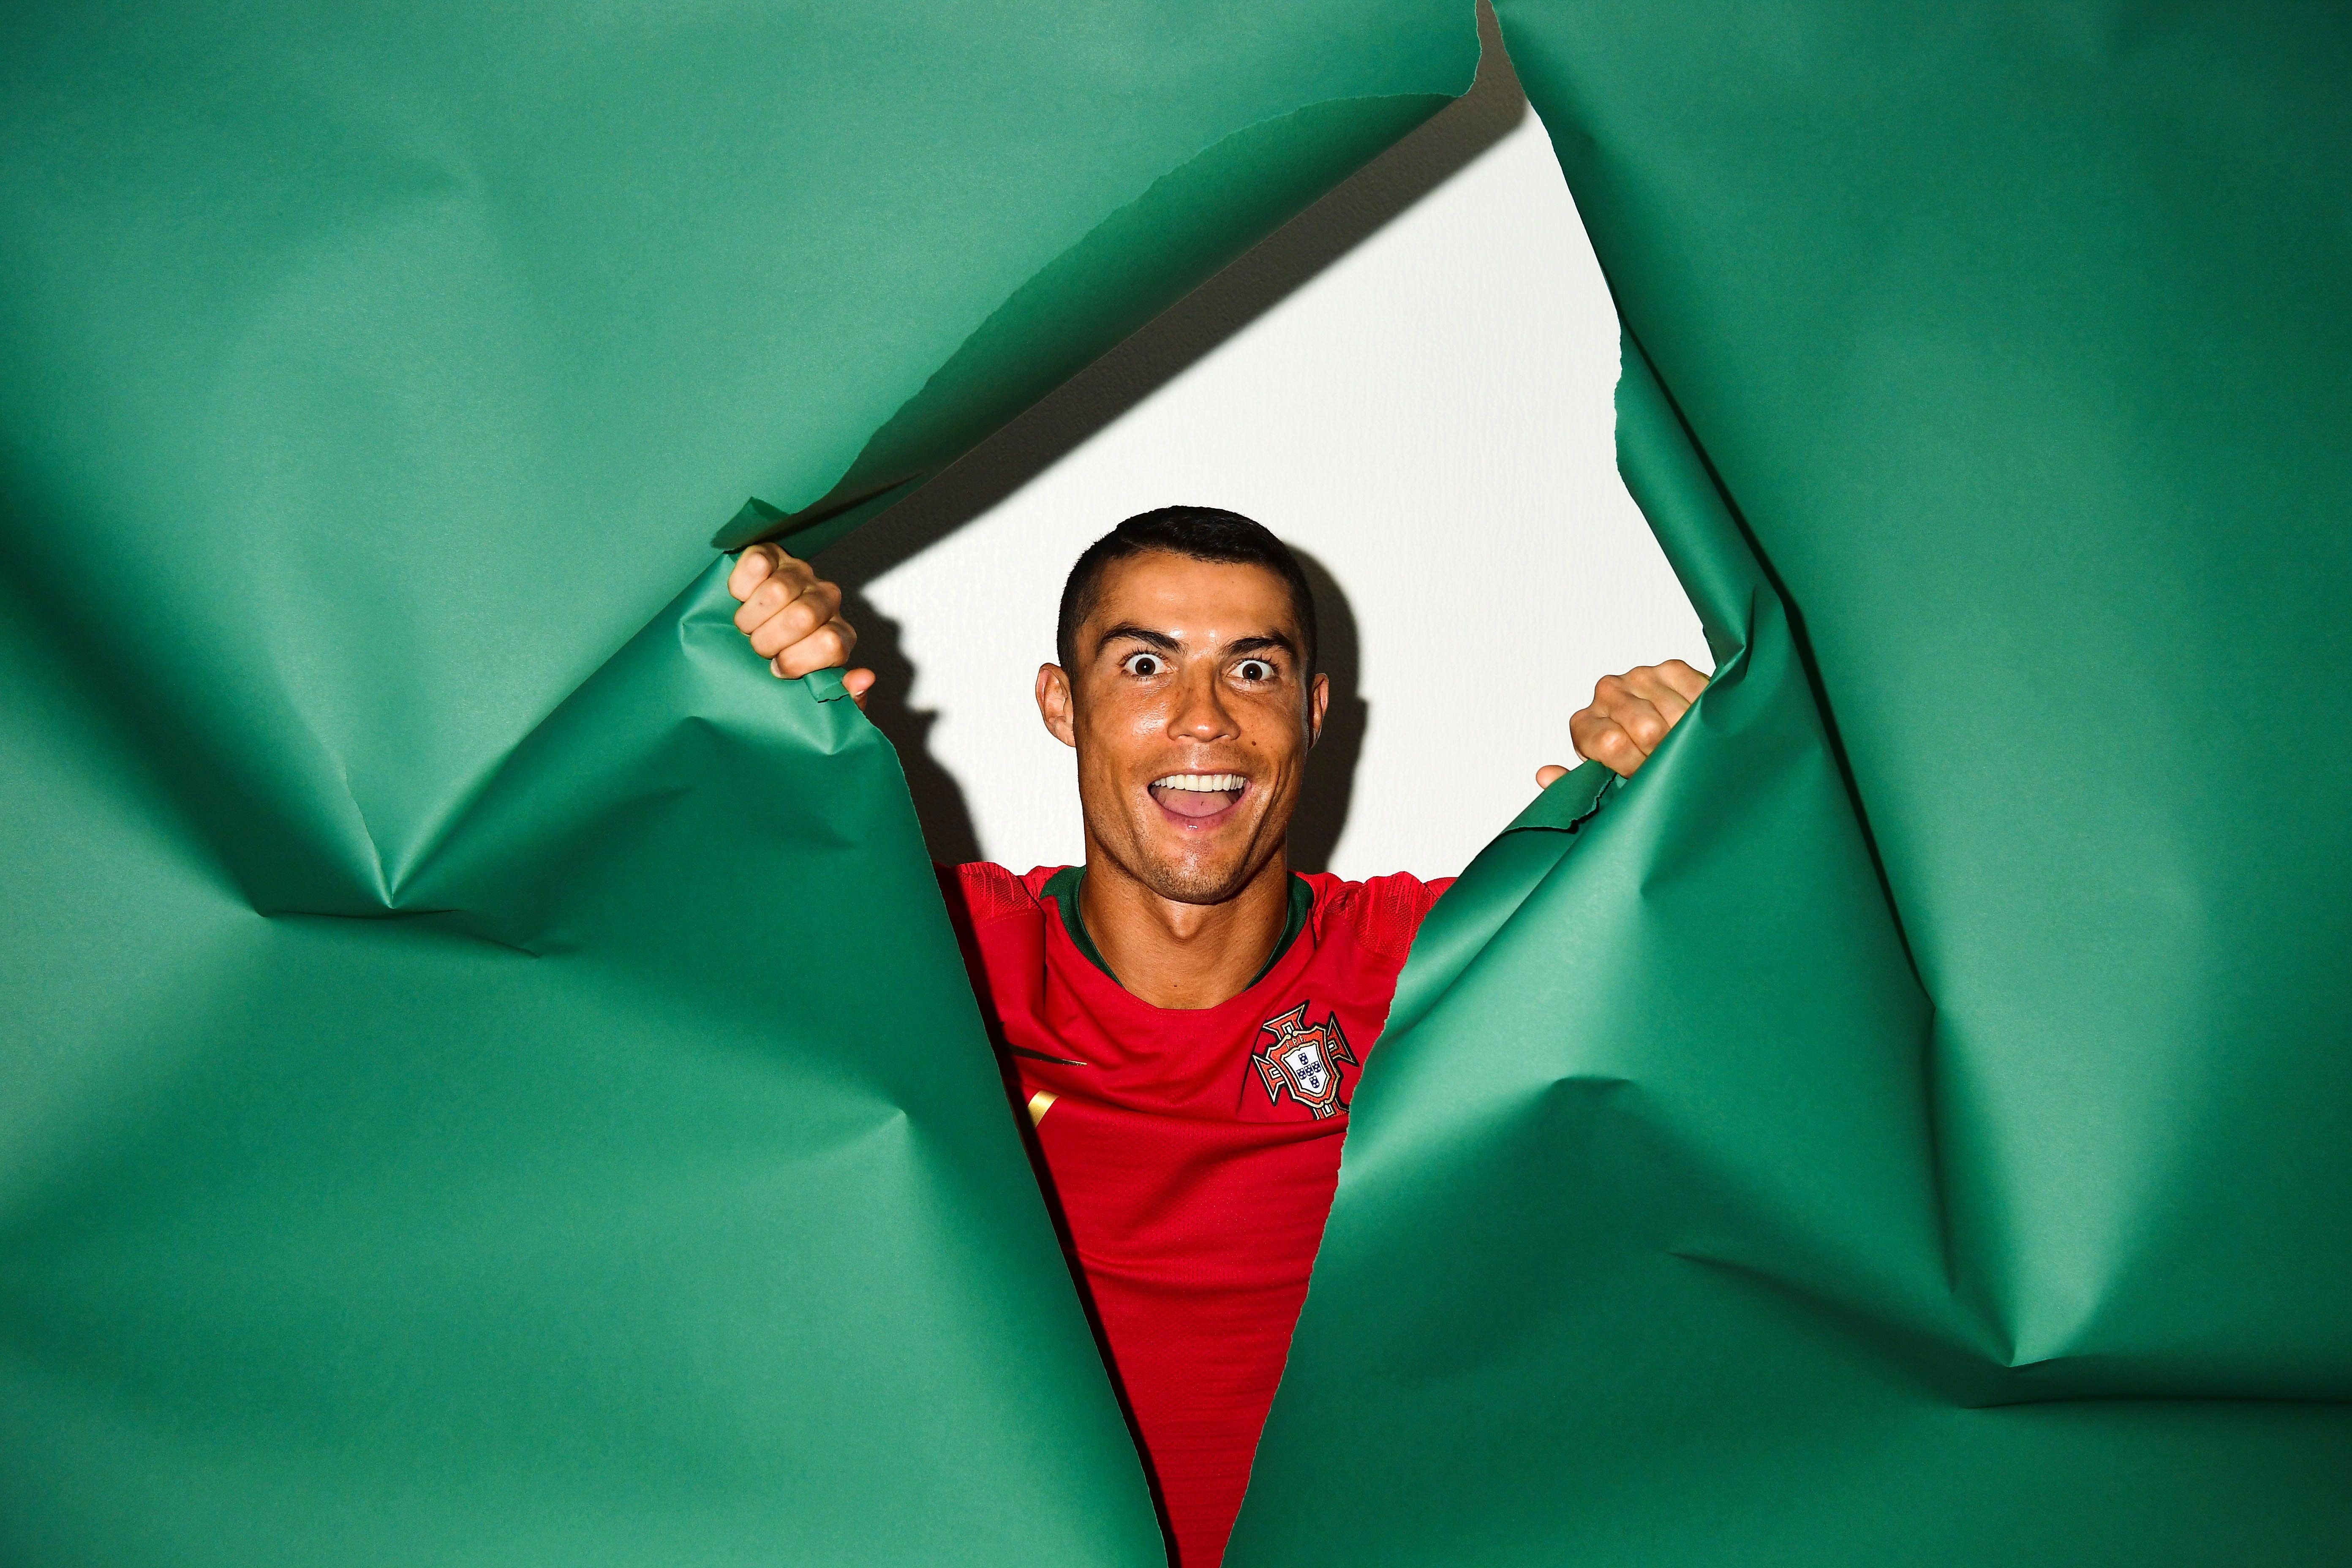 5568x3712 Cristiano Ronaldo Bồ Đào Nha Chân dung 2018, Thể thao HD, Hình nền 4k, Hình ảnh, Bối cảnh, Hình ảnh và Hình ảnh